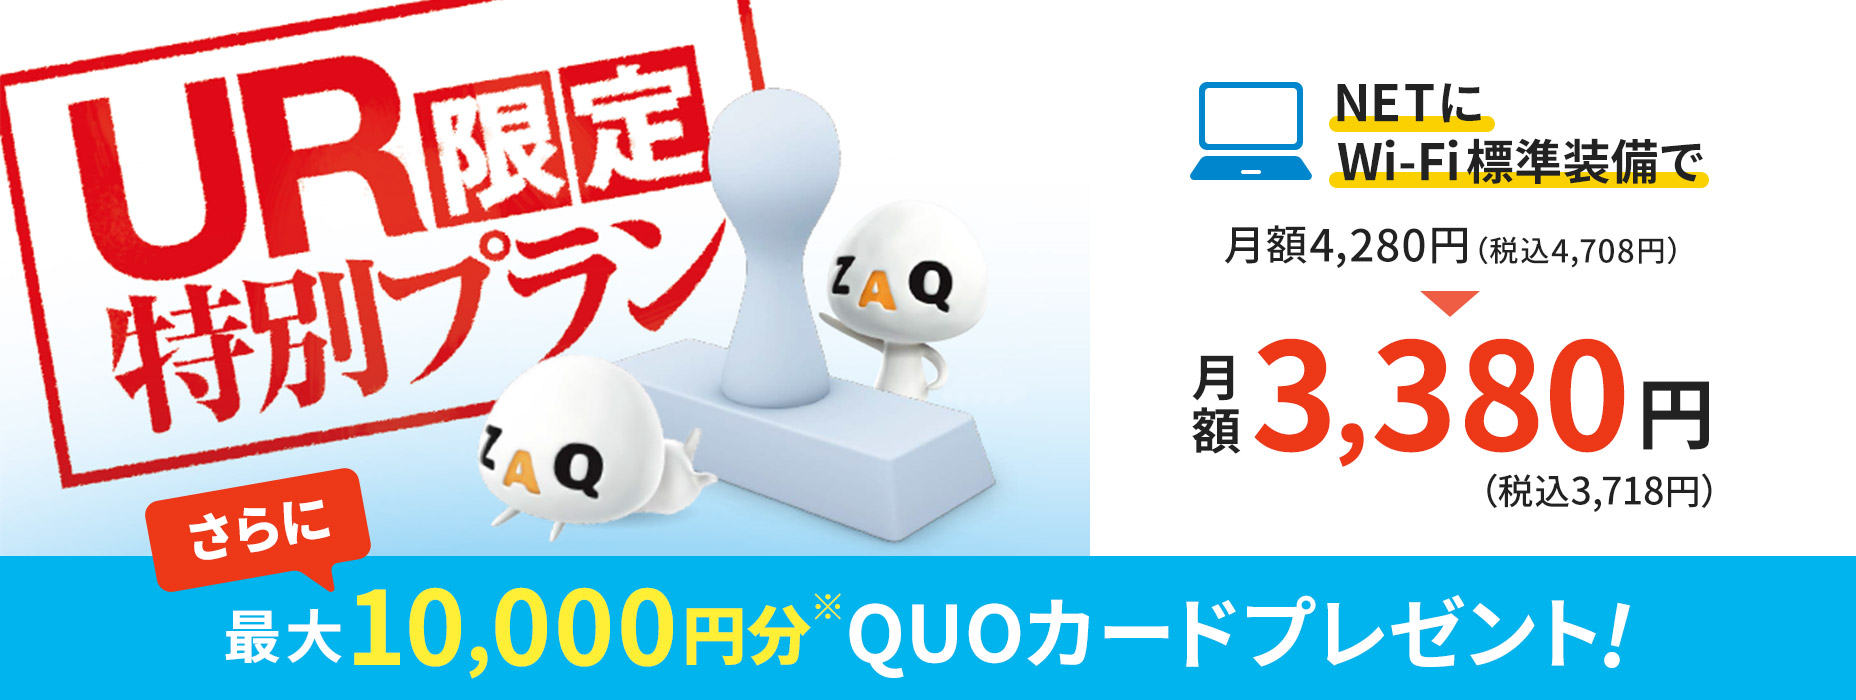 UR限定特別プラン NETにWi-Fi標準装備 最大10,000円分のQUOカードプレゼント